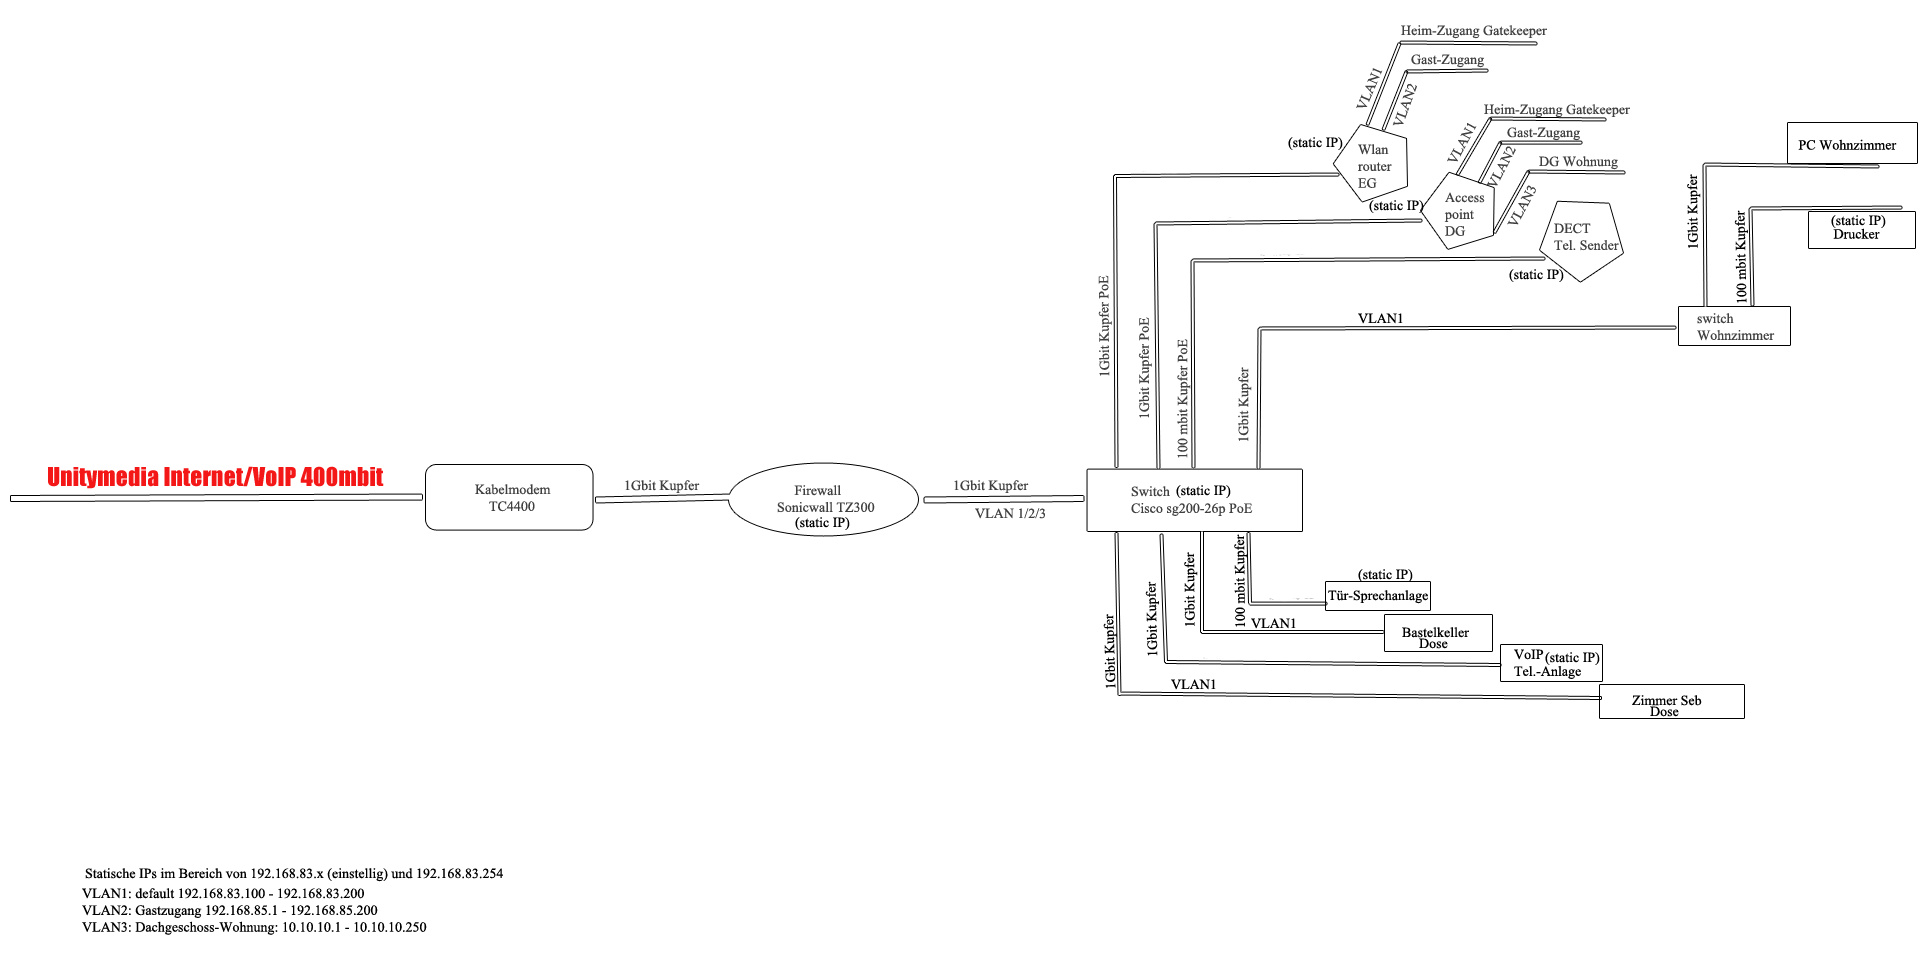 Das Schema des Heimnetzwerks von floh667